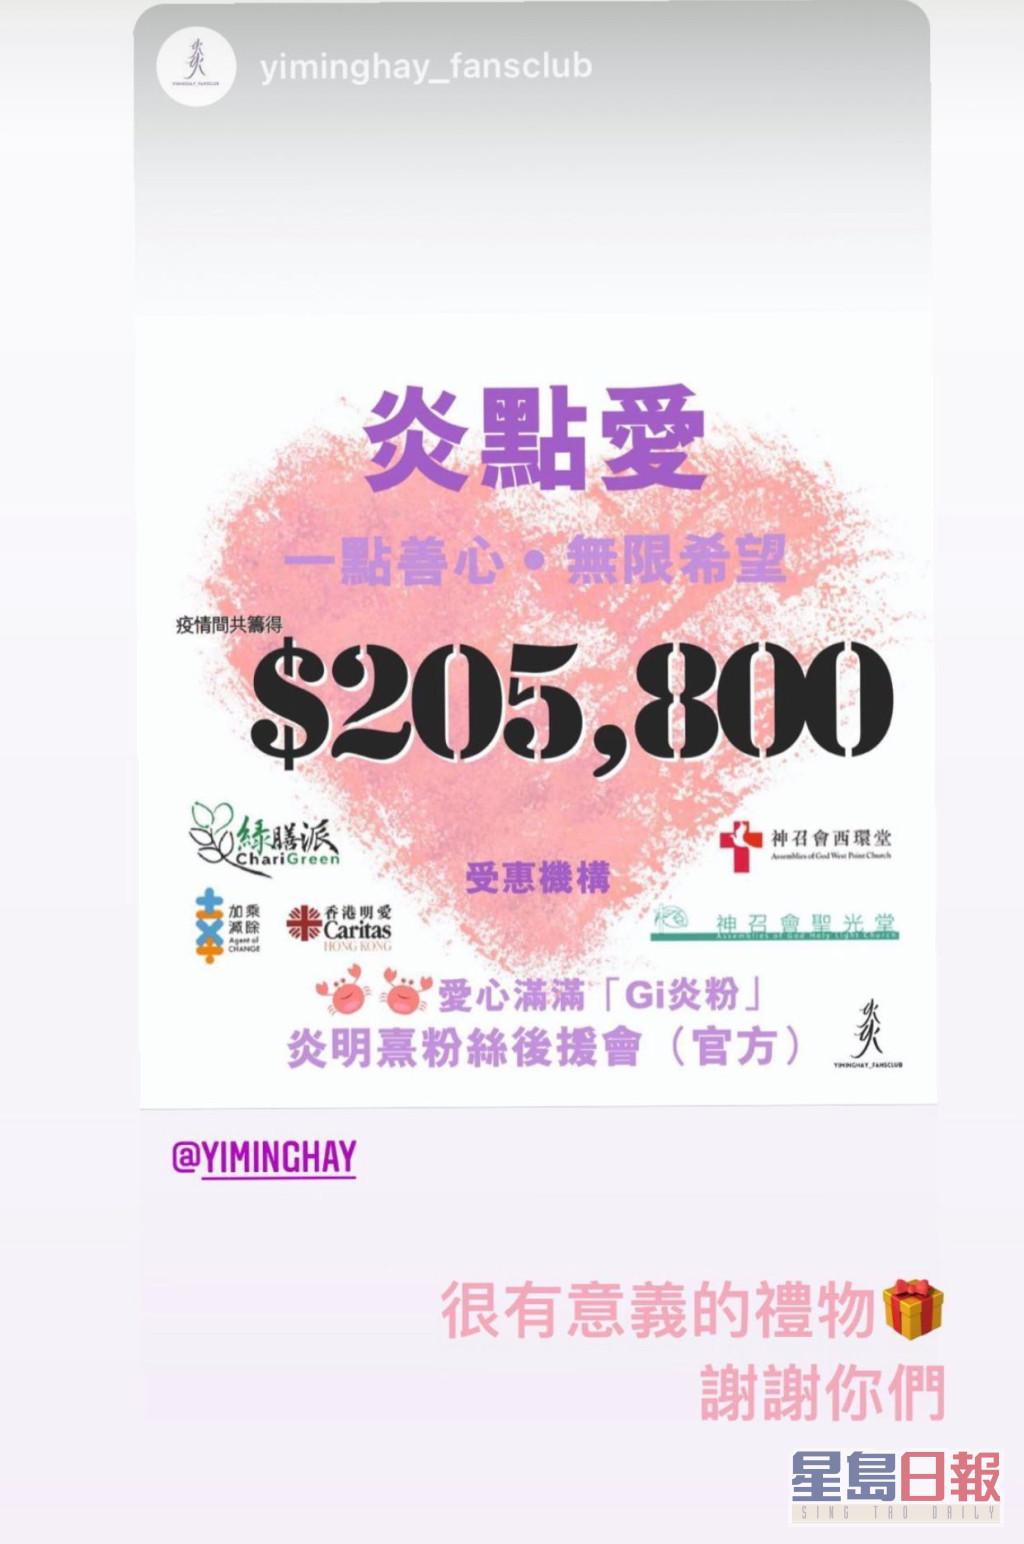 Gi炎粉合力筹得205,800元捐给多个慈善机构，作为送给偶像生日礼物。